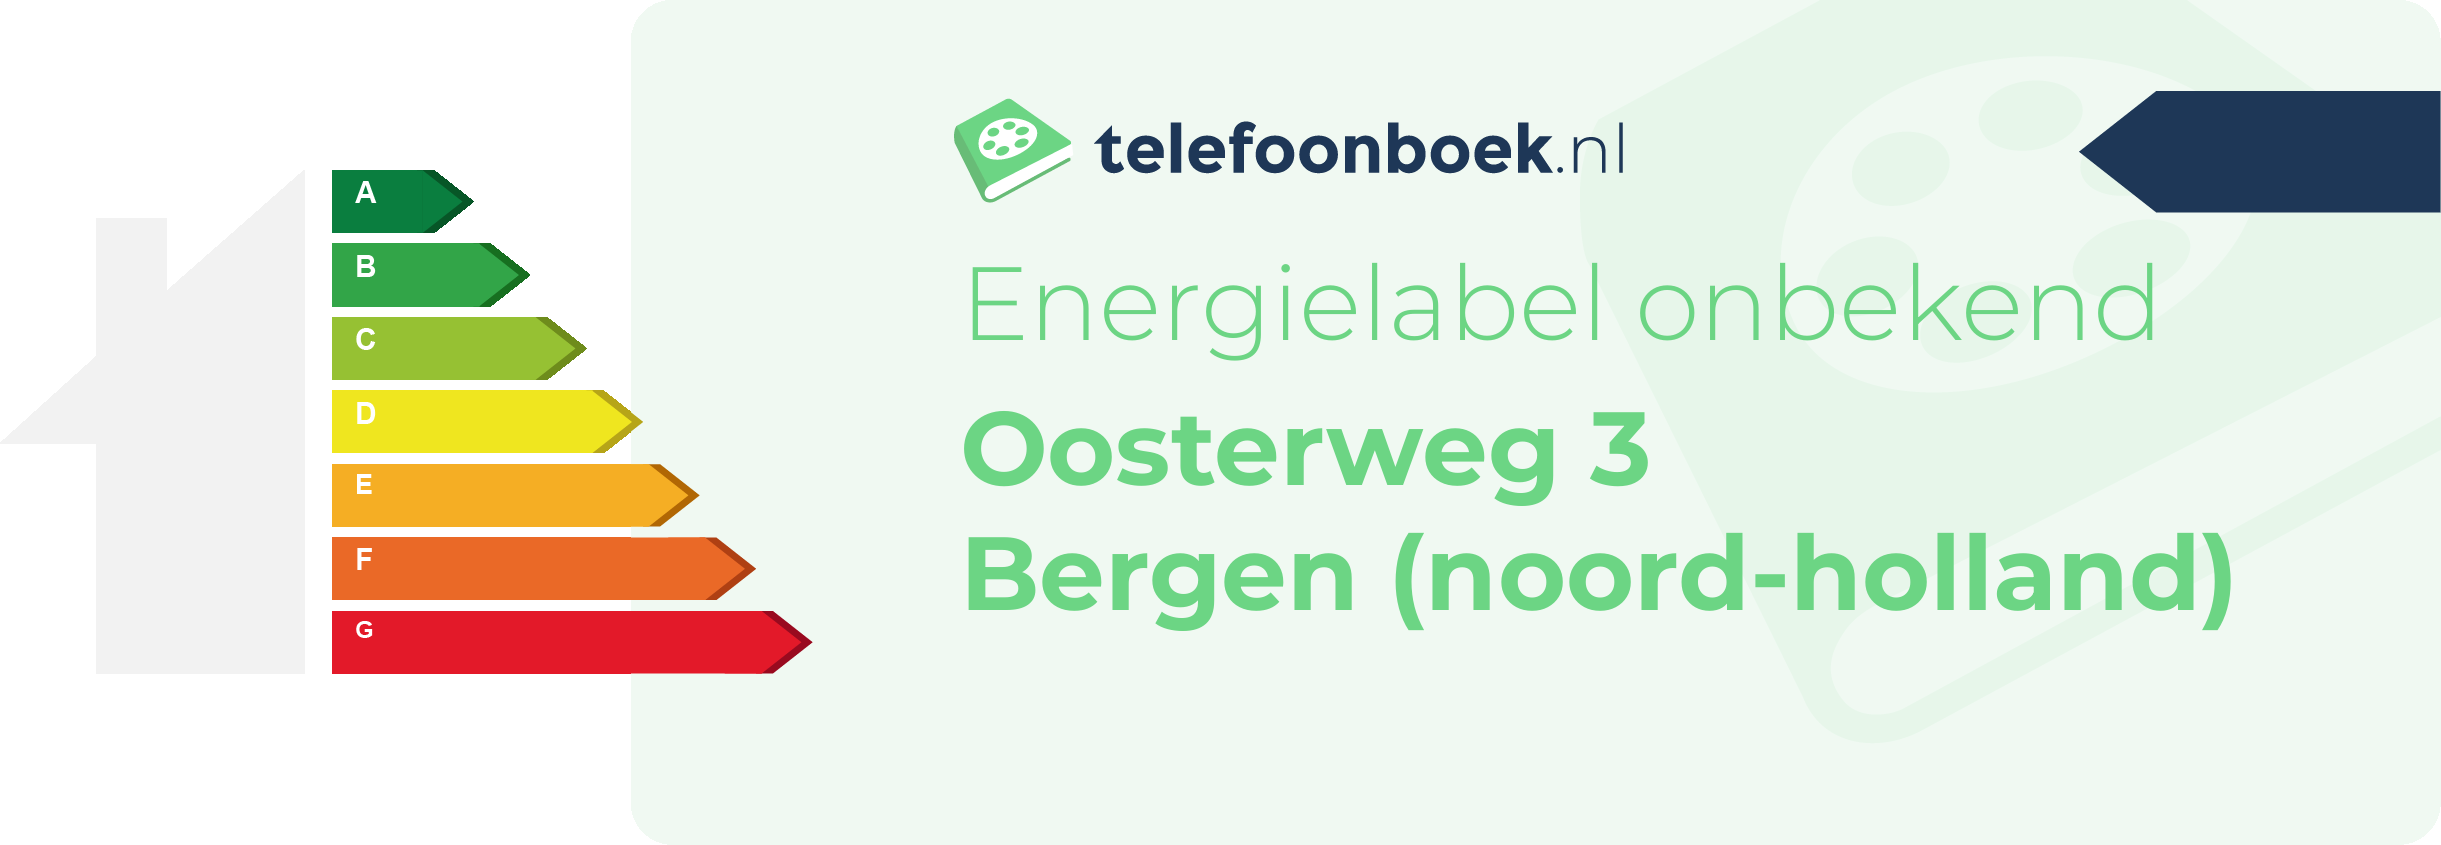 Energielabel Oosterweg 3 Bergen (Noord-Holland)